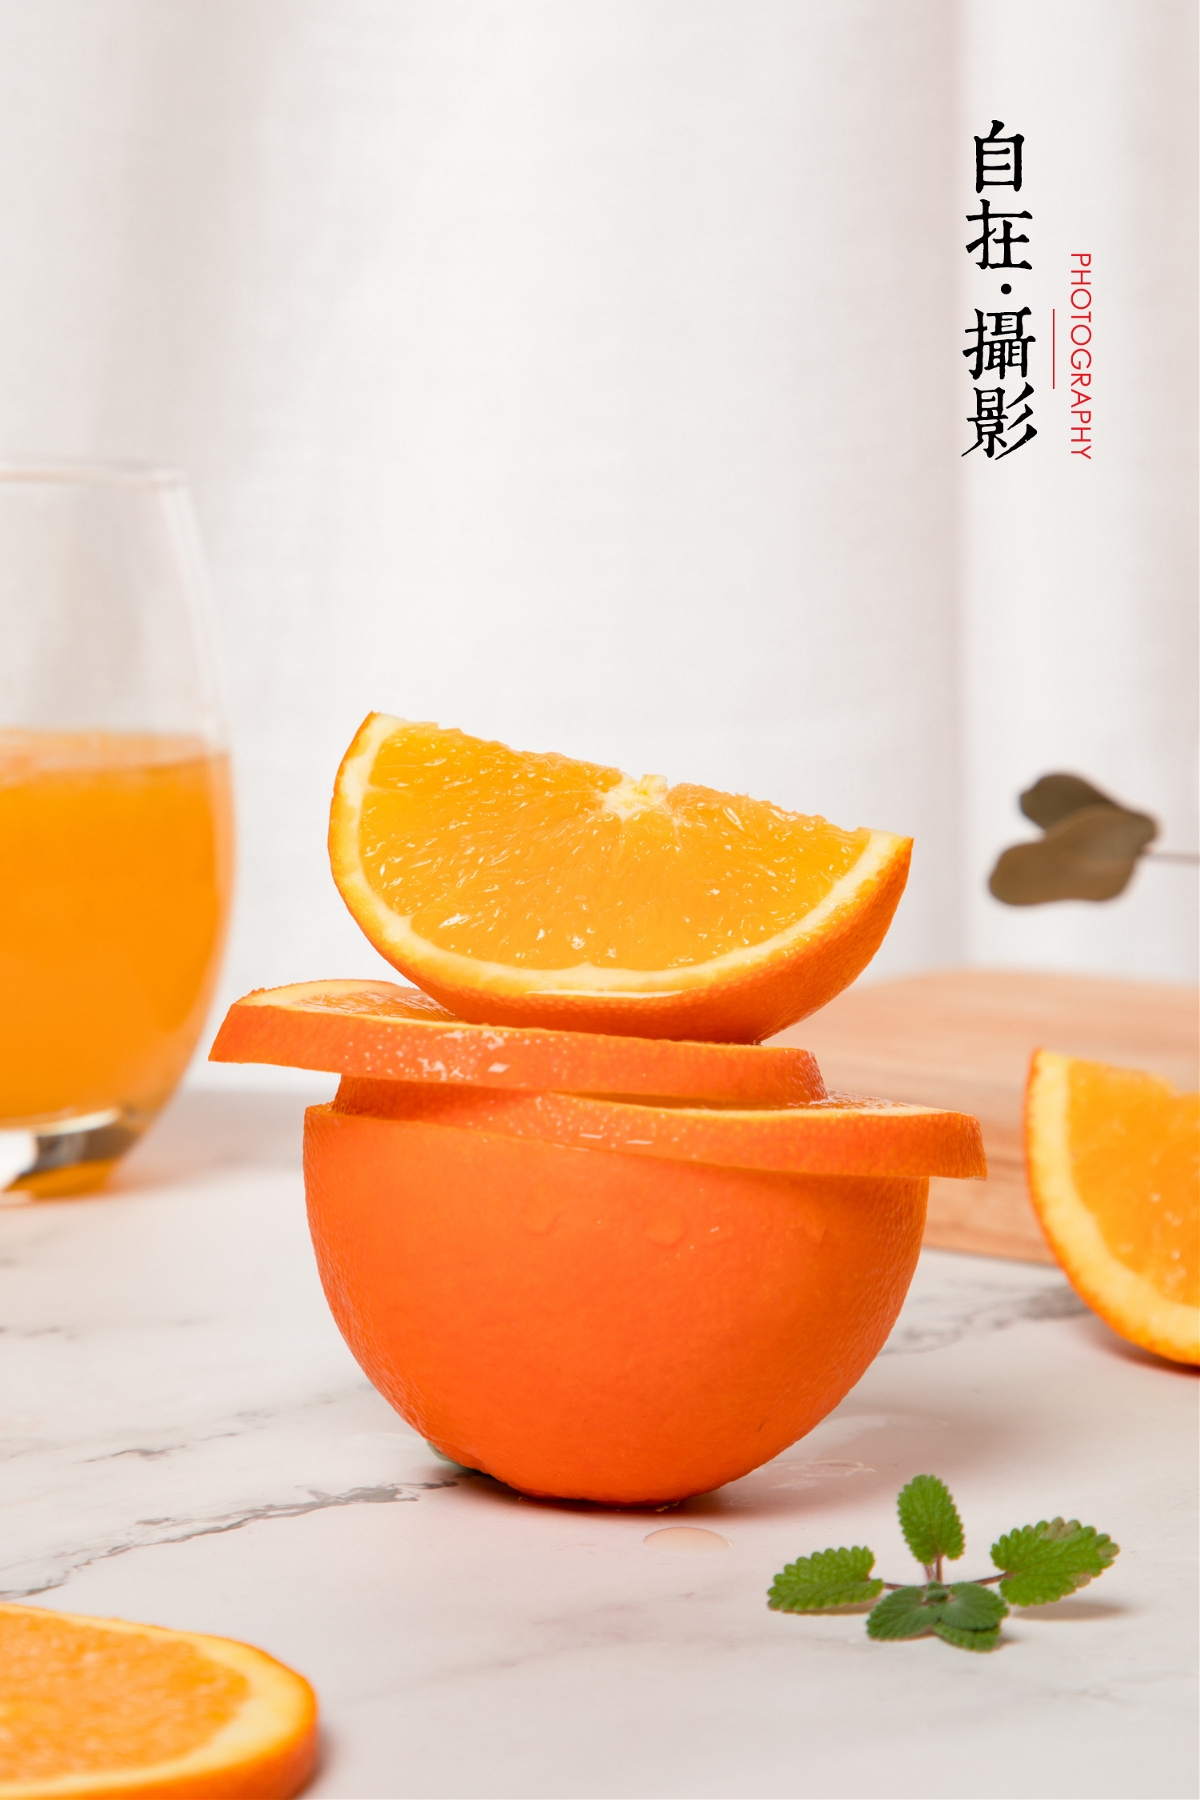 橙子|水果|产品摄影 